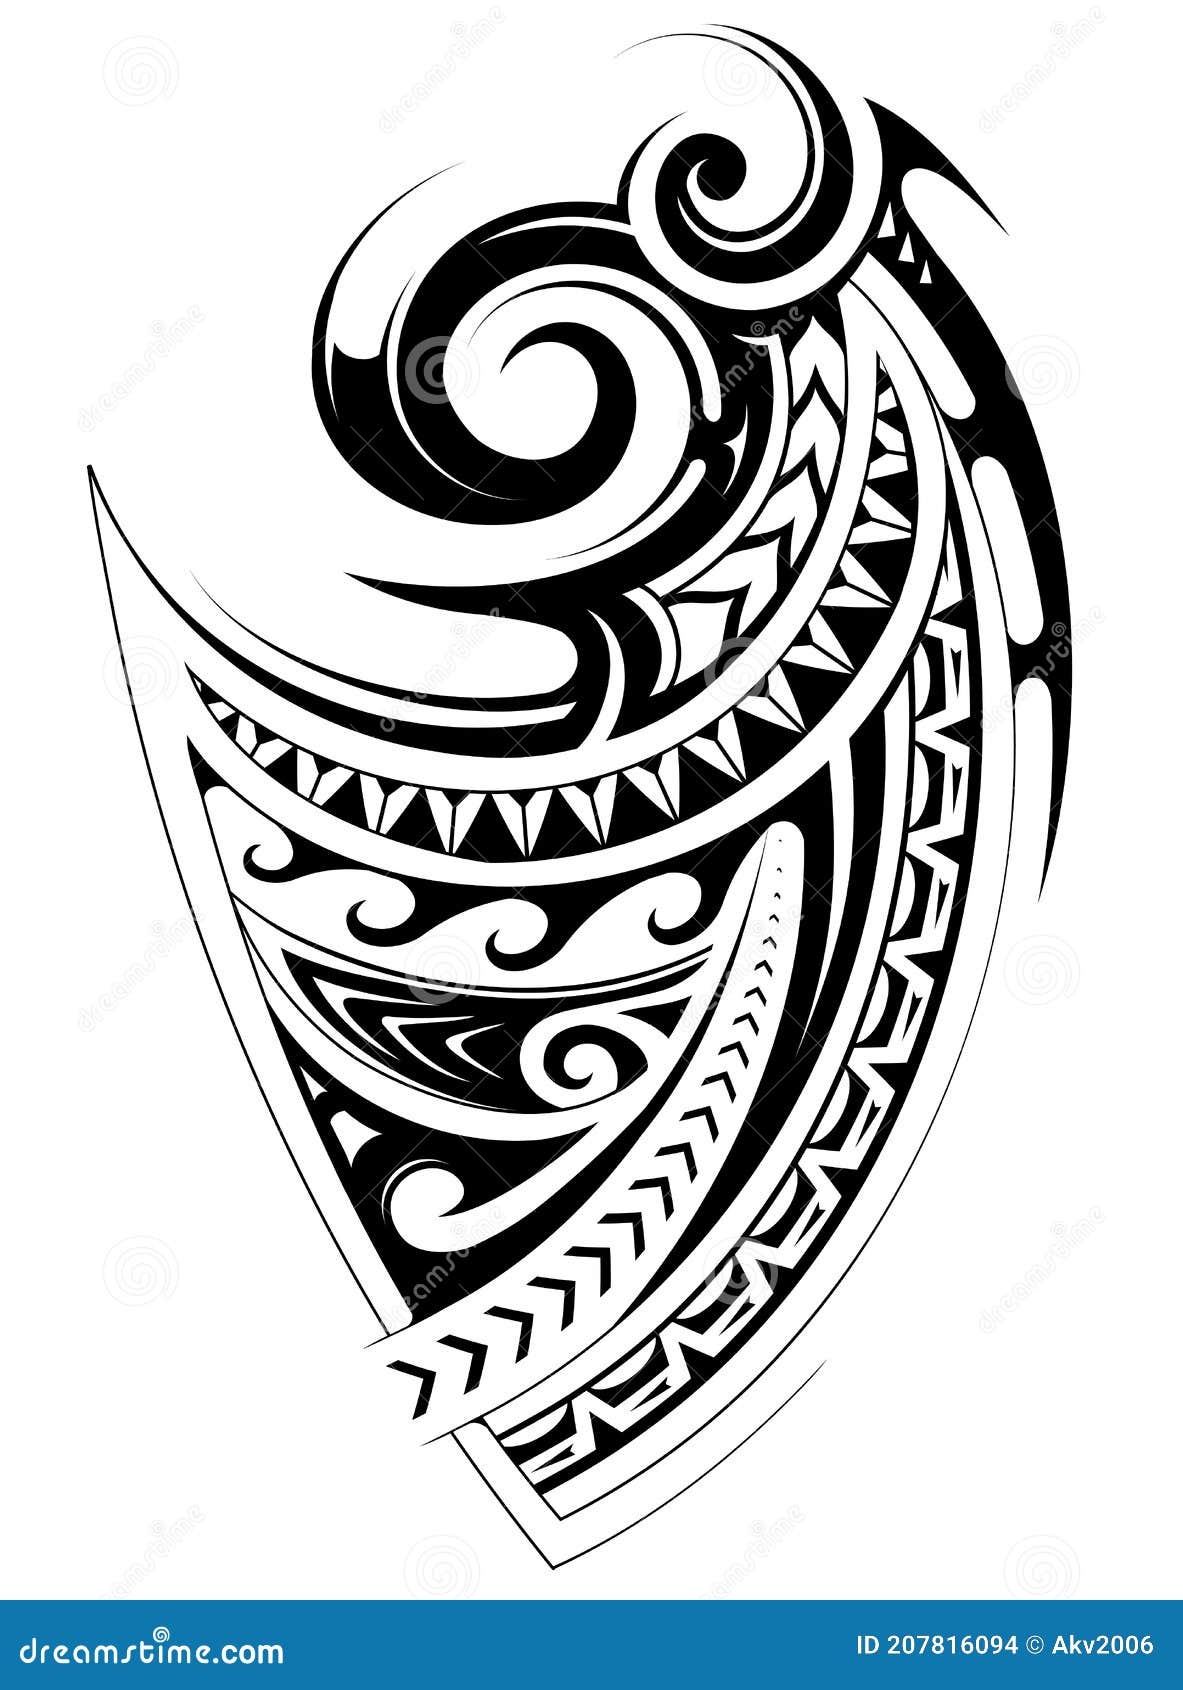 120 Polynesian Shoulder Tattoo Designs Illustrations RoyaltyFree Vector  Graphics  Clip Art  iStock